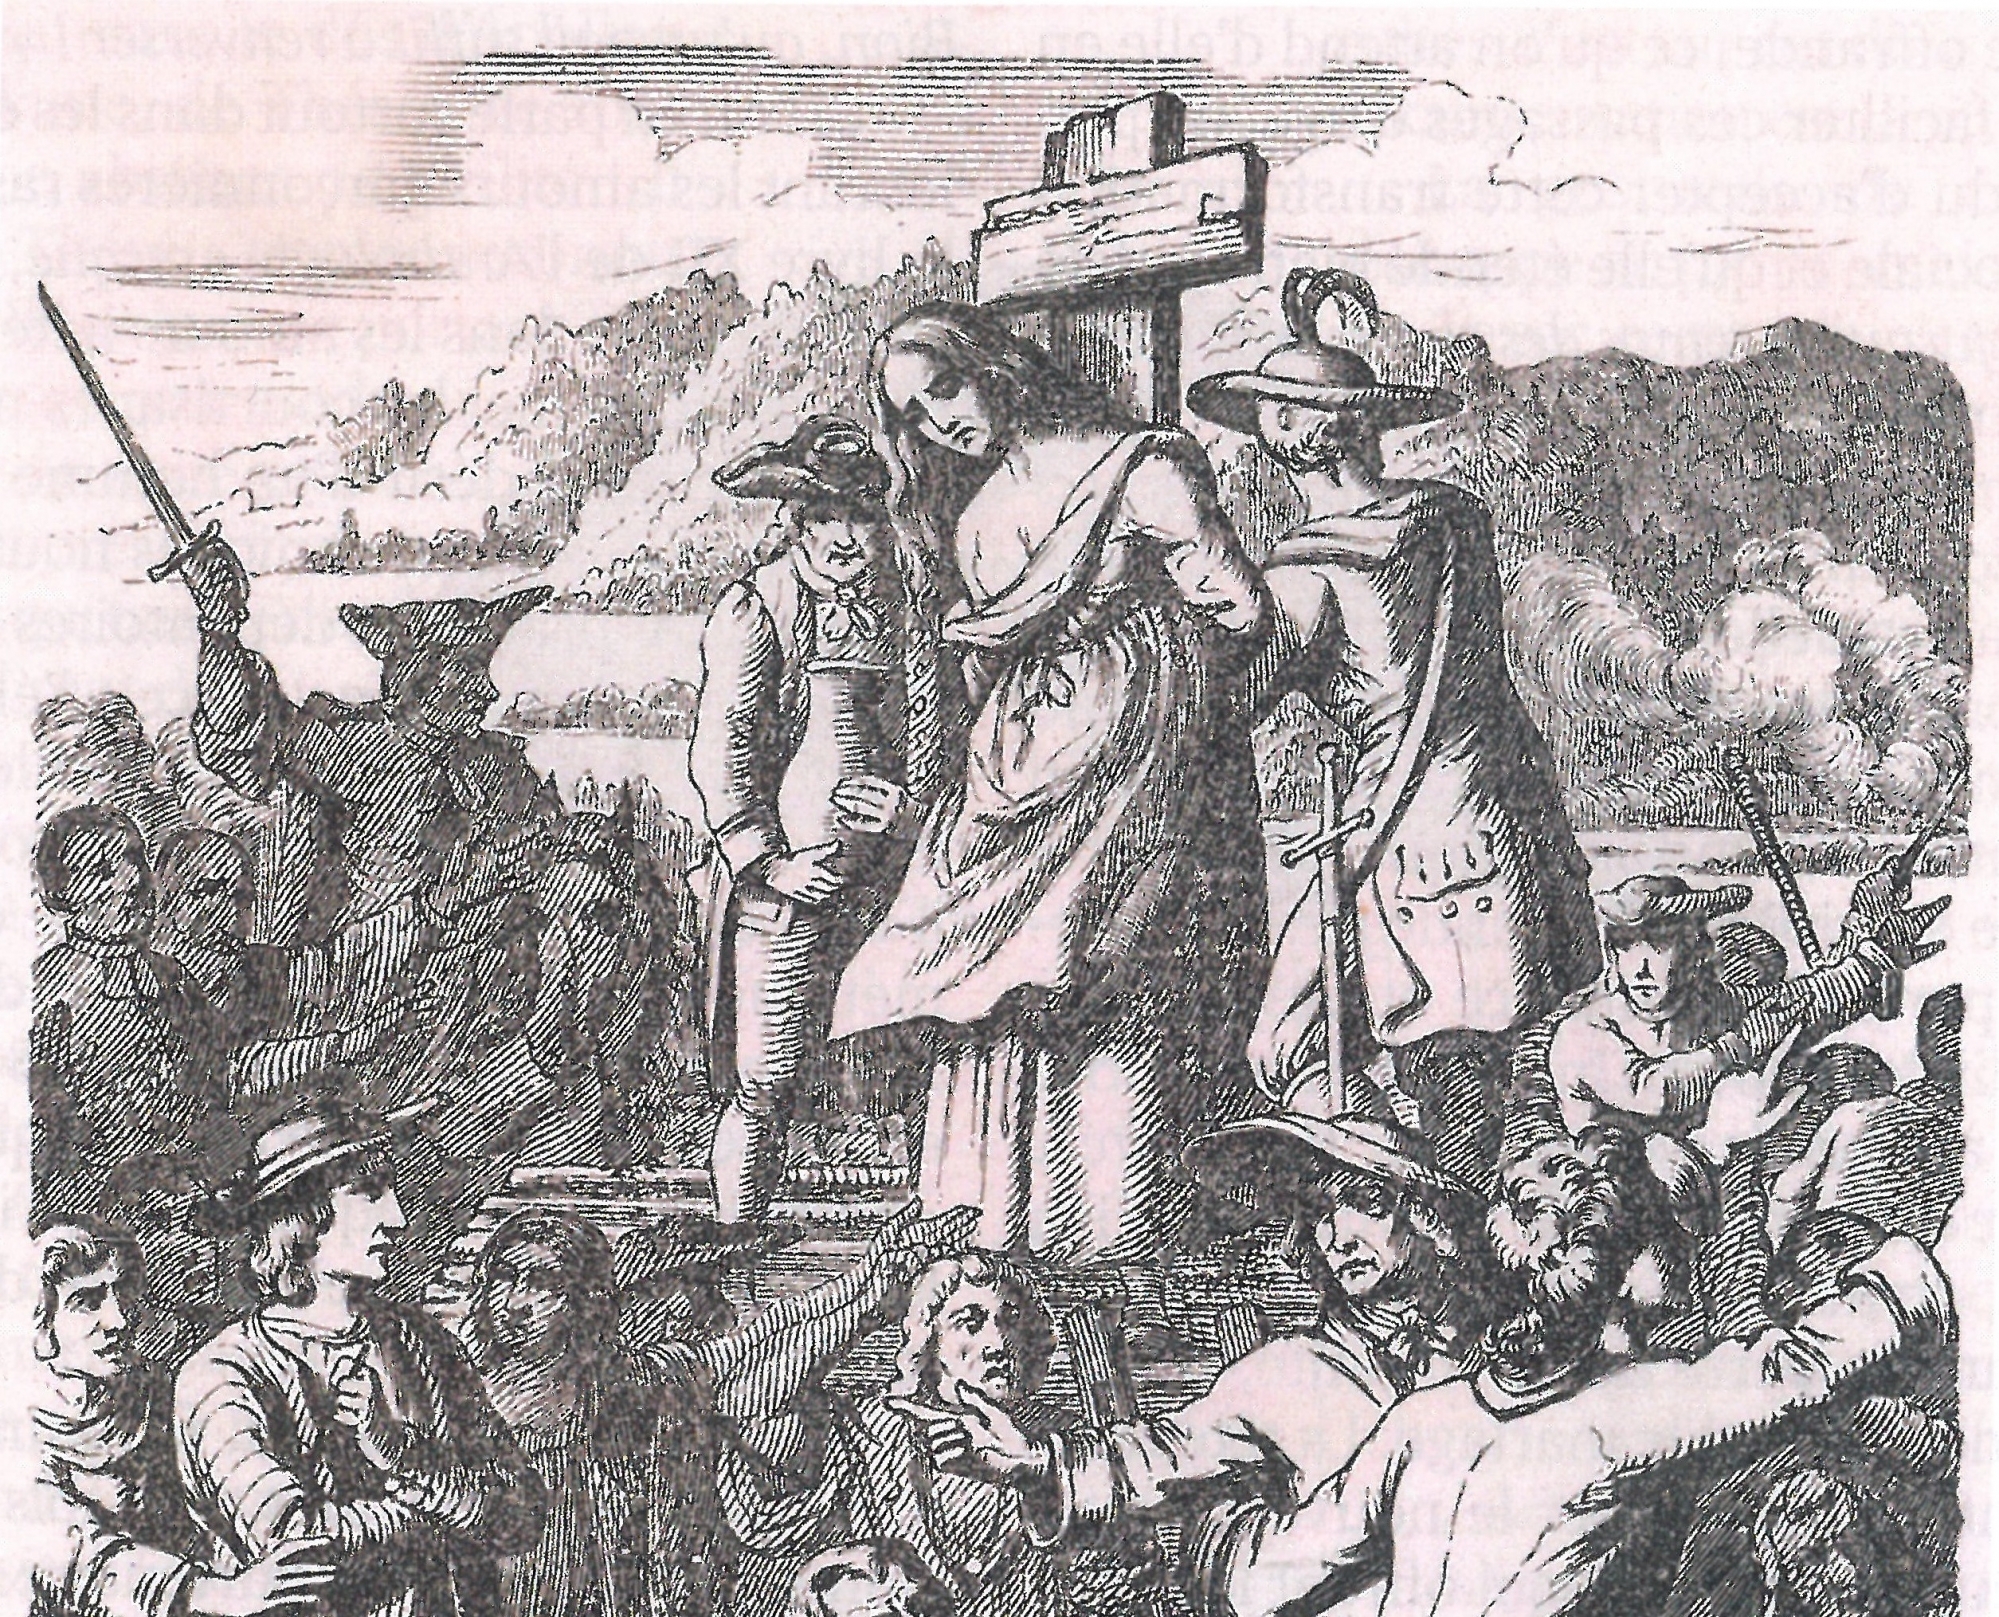 Le Valais a vécu la terreur de la chasse aux sorcières pendant laquelle les personnes soupçonnées étaient torturées avant d'avoir droit à un procès particulier.